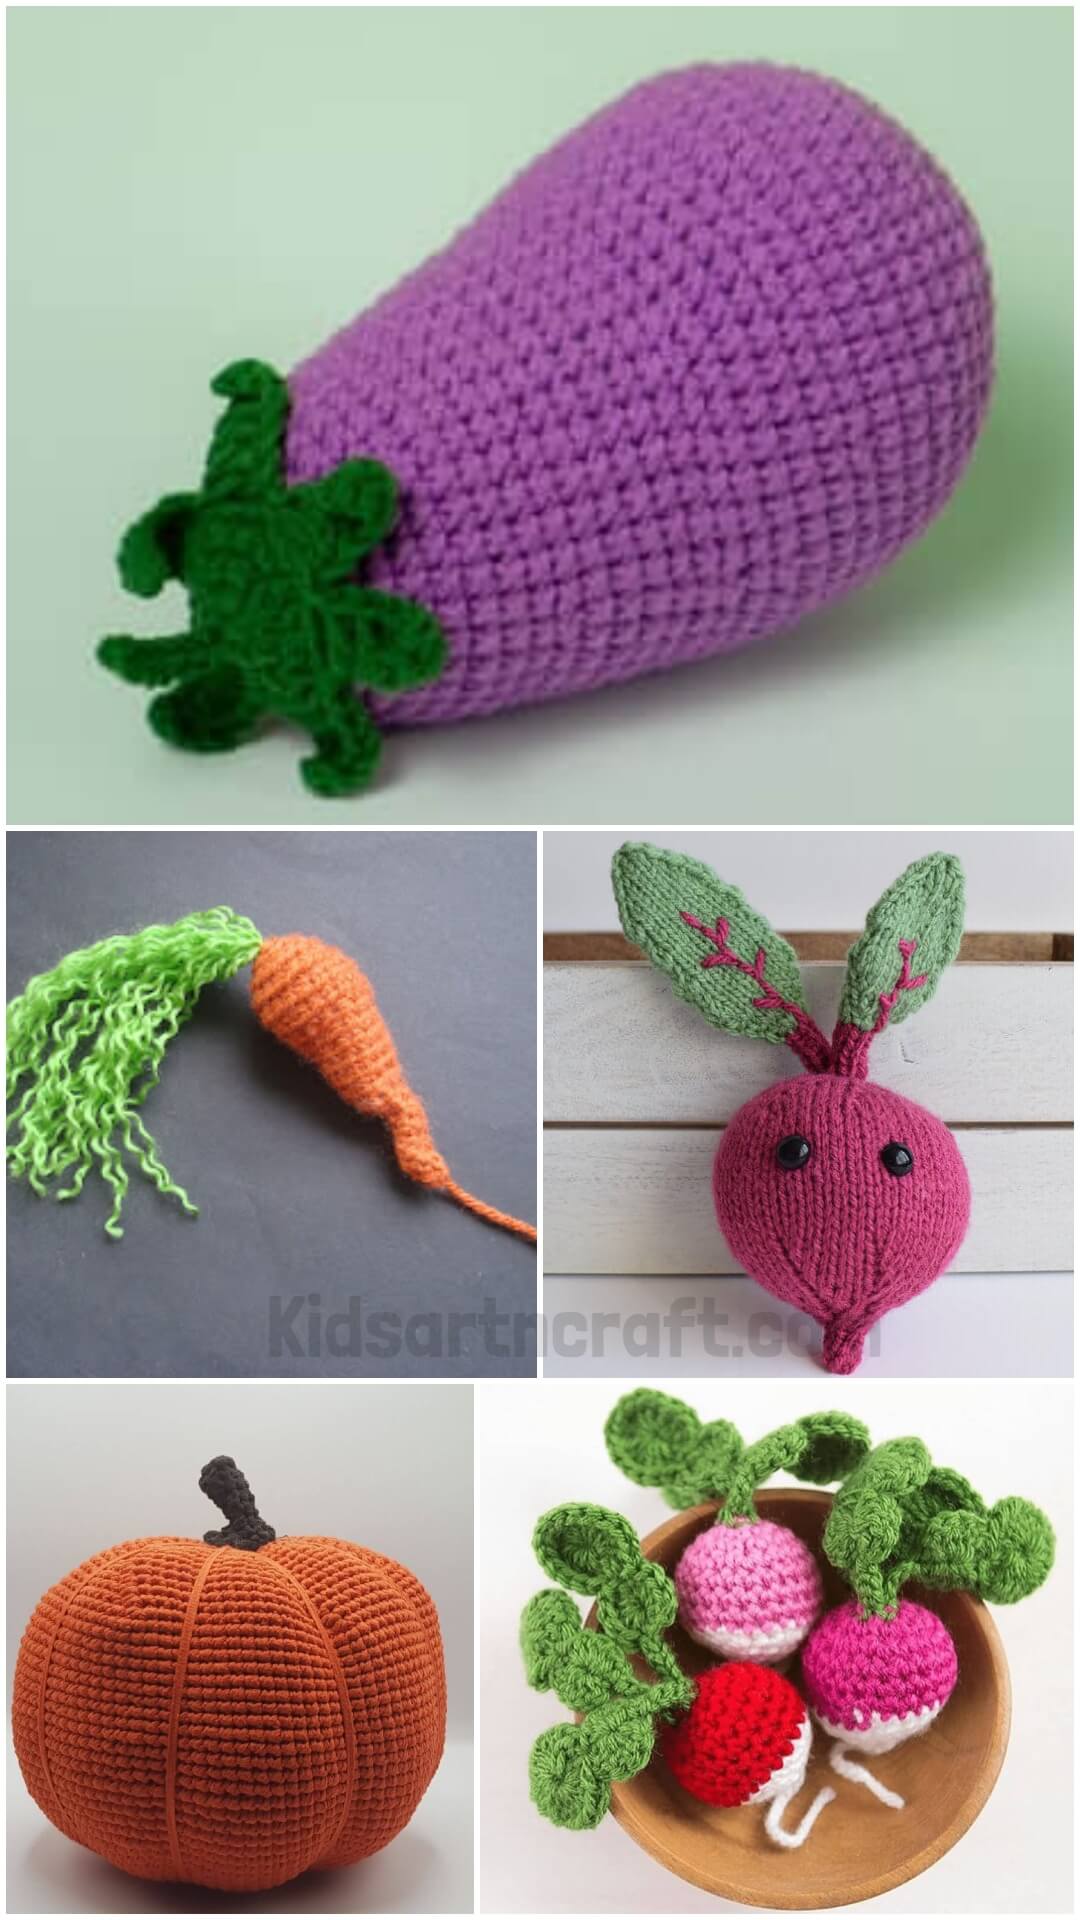  Crochet Vegetable Patterns 